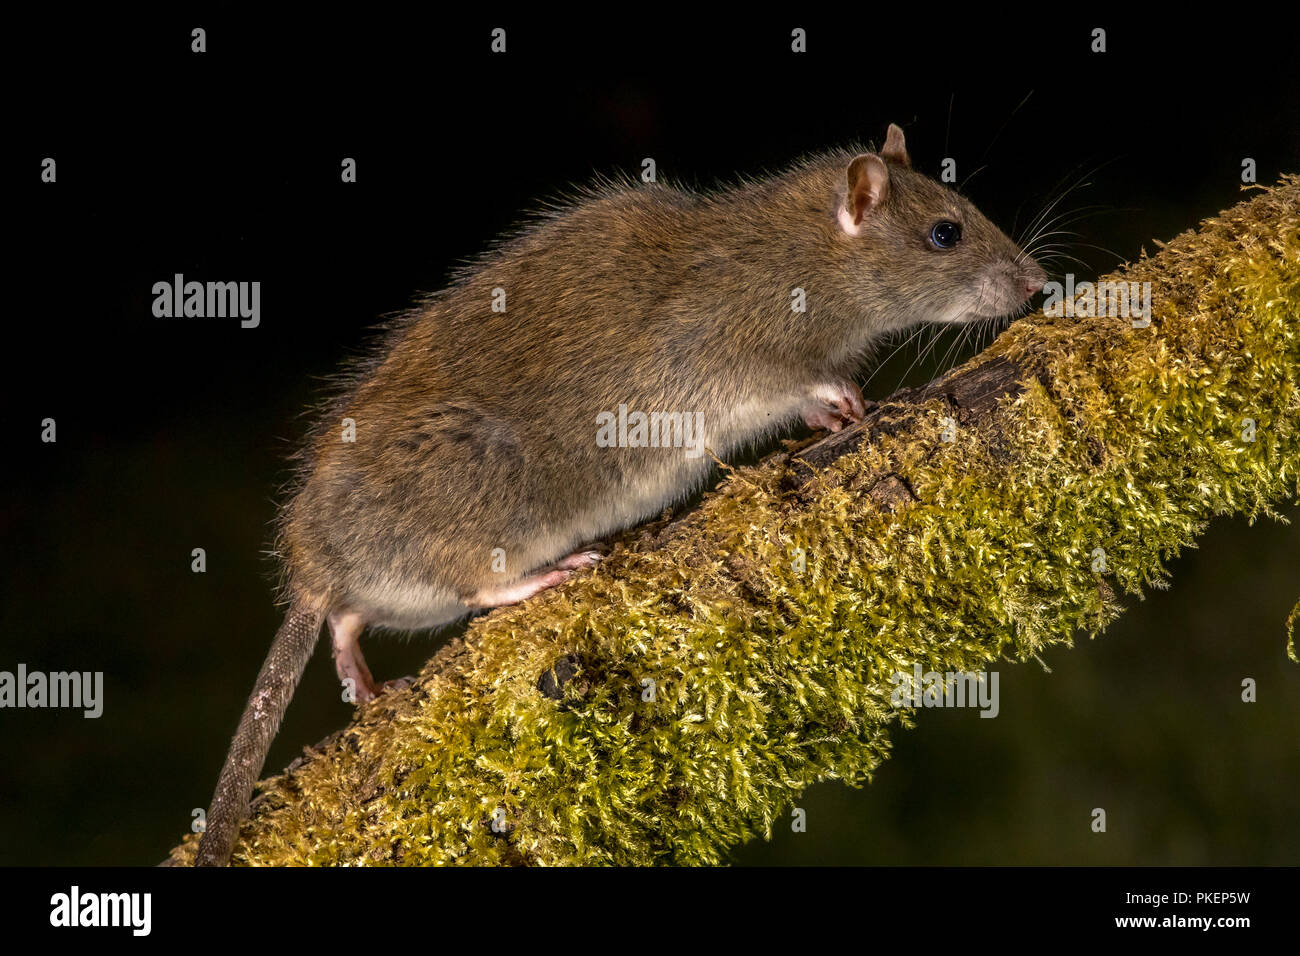 Wild marrone (ratto Rattus norvegicus) passeggiate sul log di notte. Fotografie ad alta velocità immagine Foto Stock